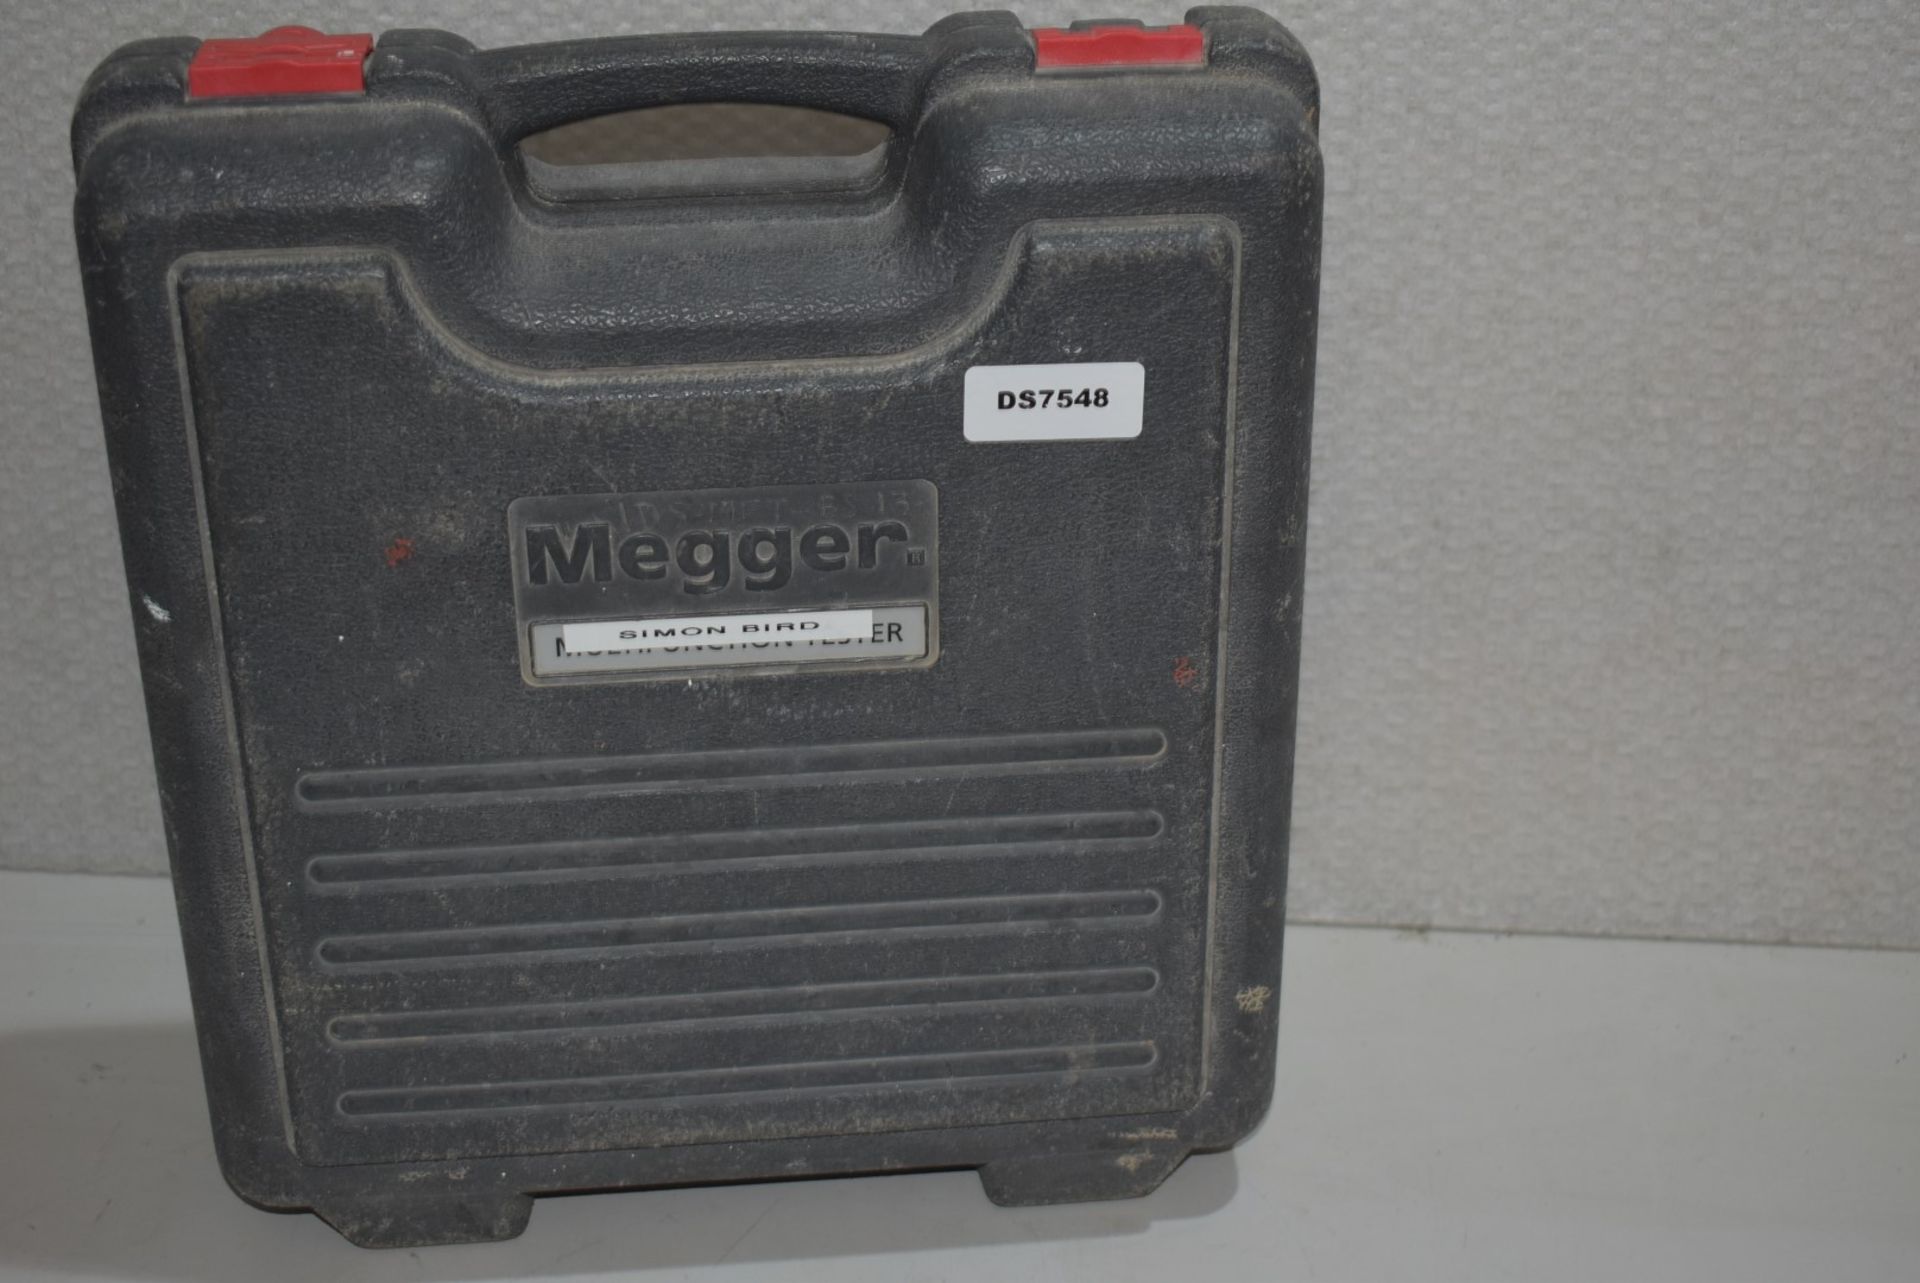 1 x MEGGER MFT1720 Electrical Tester, 250 V, 500 V, 1000 V - Original RRP £1,050 - Ref: DS7548 ALT - - Image 5 of 14